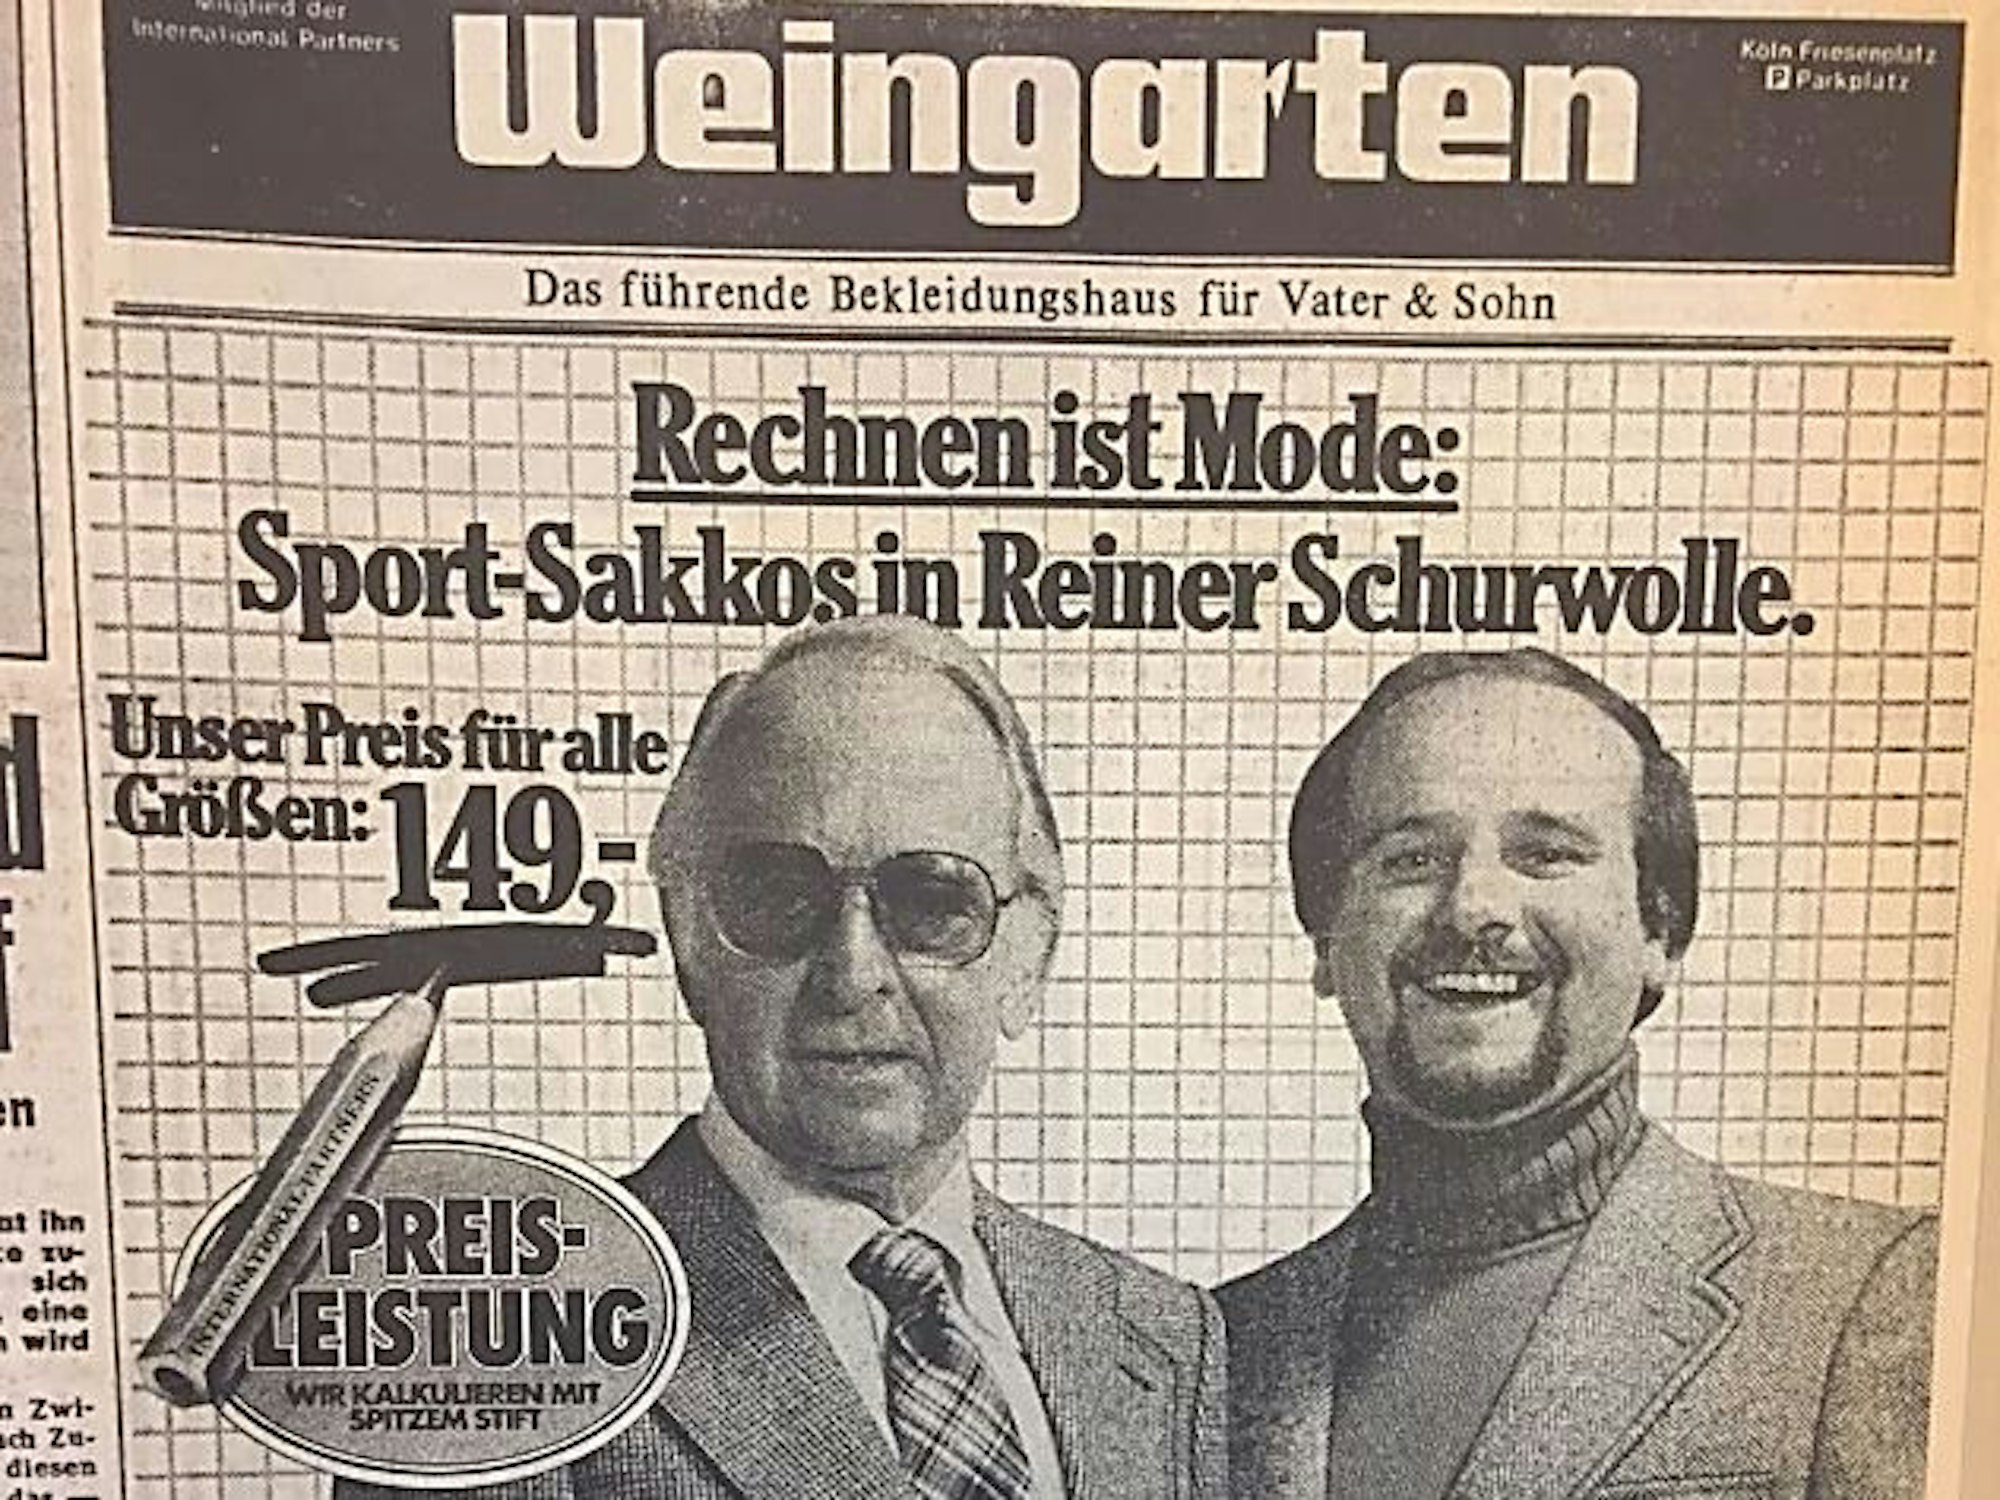 Herrenmode bei Weingarten in Köln: Das Sport-Sakko aus reiner Schurwolle gab's für 149 D-Mark.